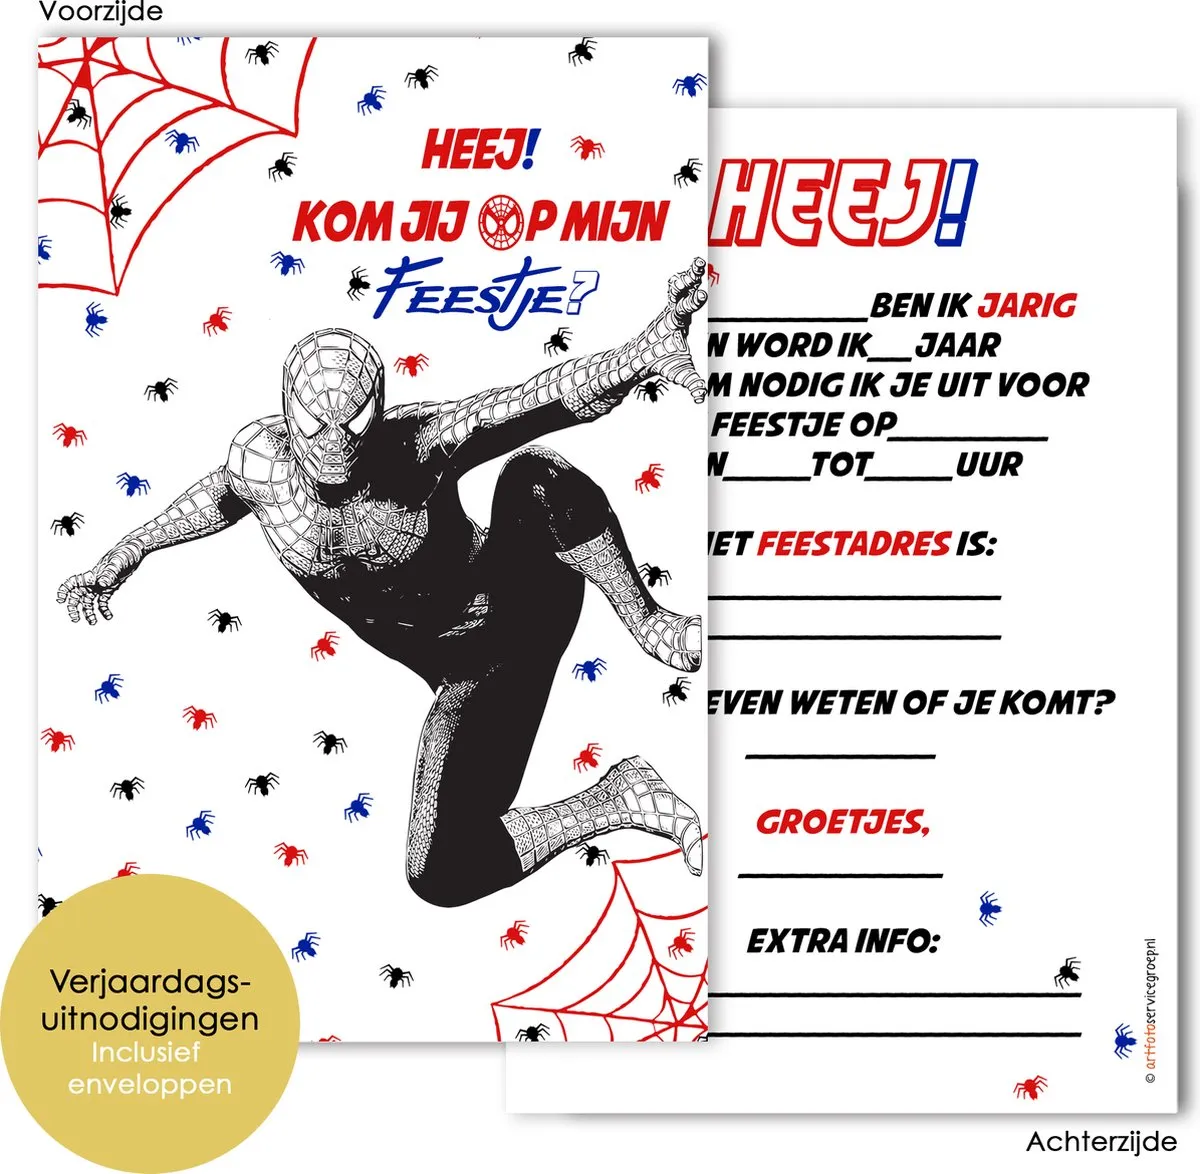 BCI014 - 8 verjaardagskaarten met envelop - Superhelden - Verjaardag uitnodiging - Uitnodigingskaarten - invulkaarten - Superhero - Kinderfeestje - verjaardagskaart - kinderverjaardag - verjaardagskaart kinderen - Spiderman uitnodigingen speelgoed